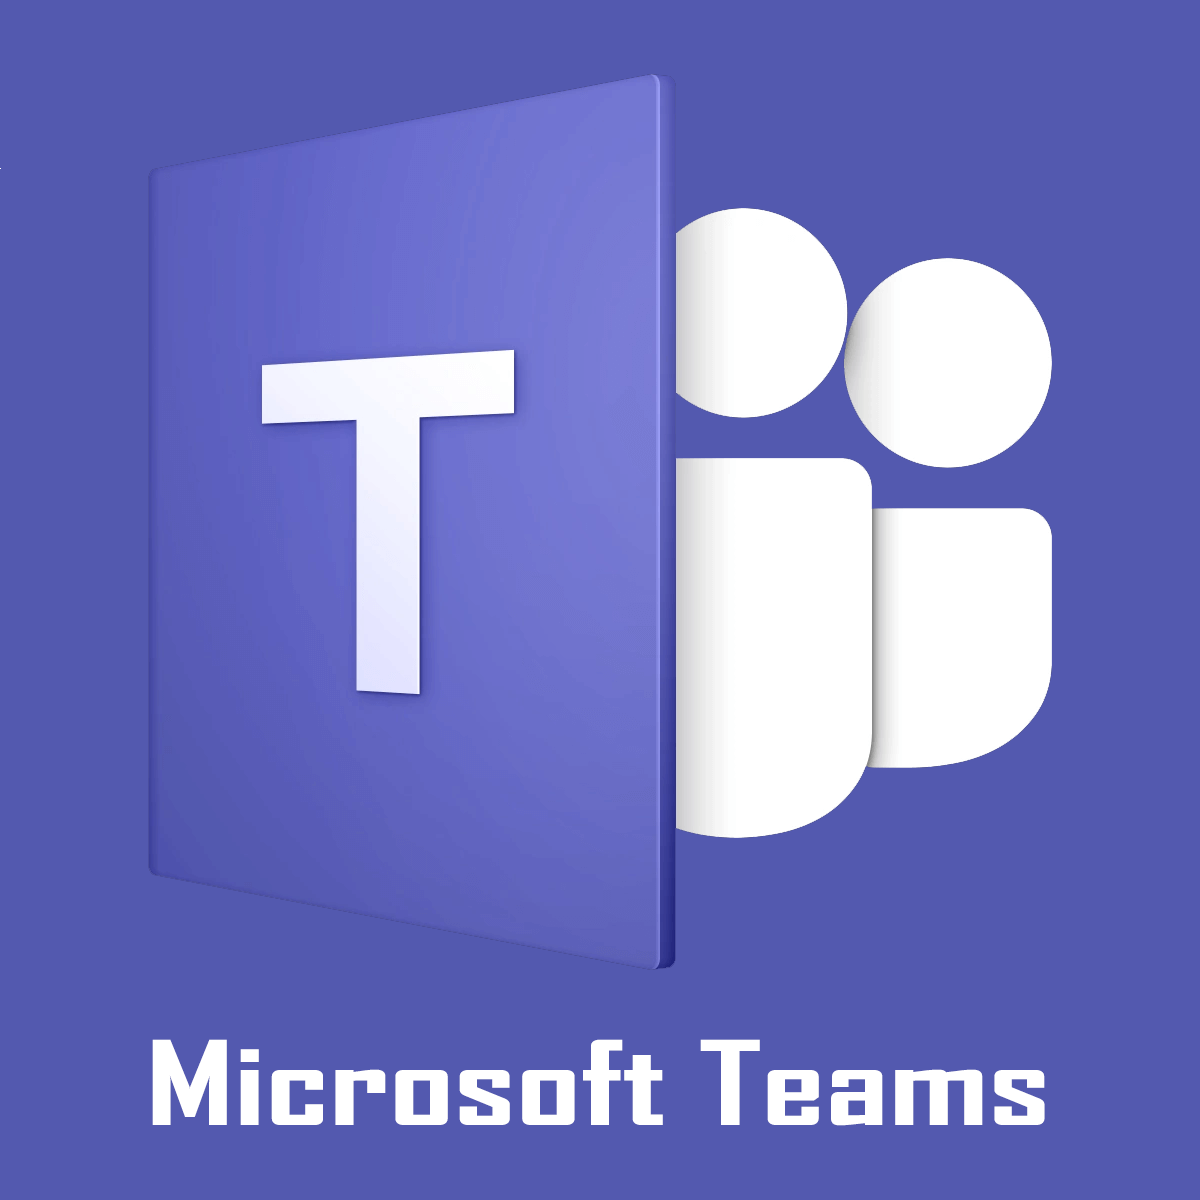 teams download windows